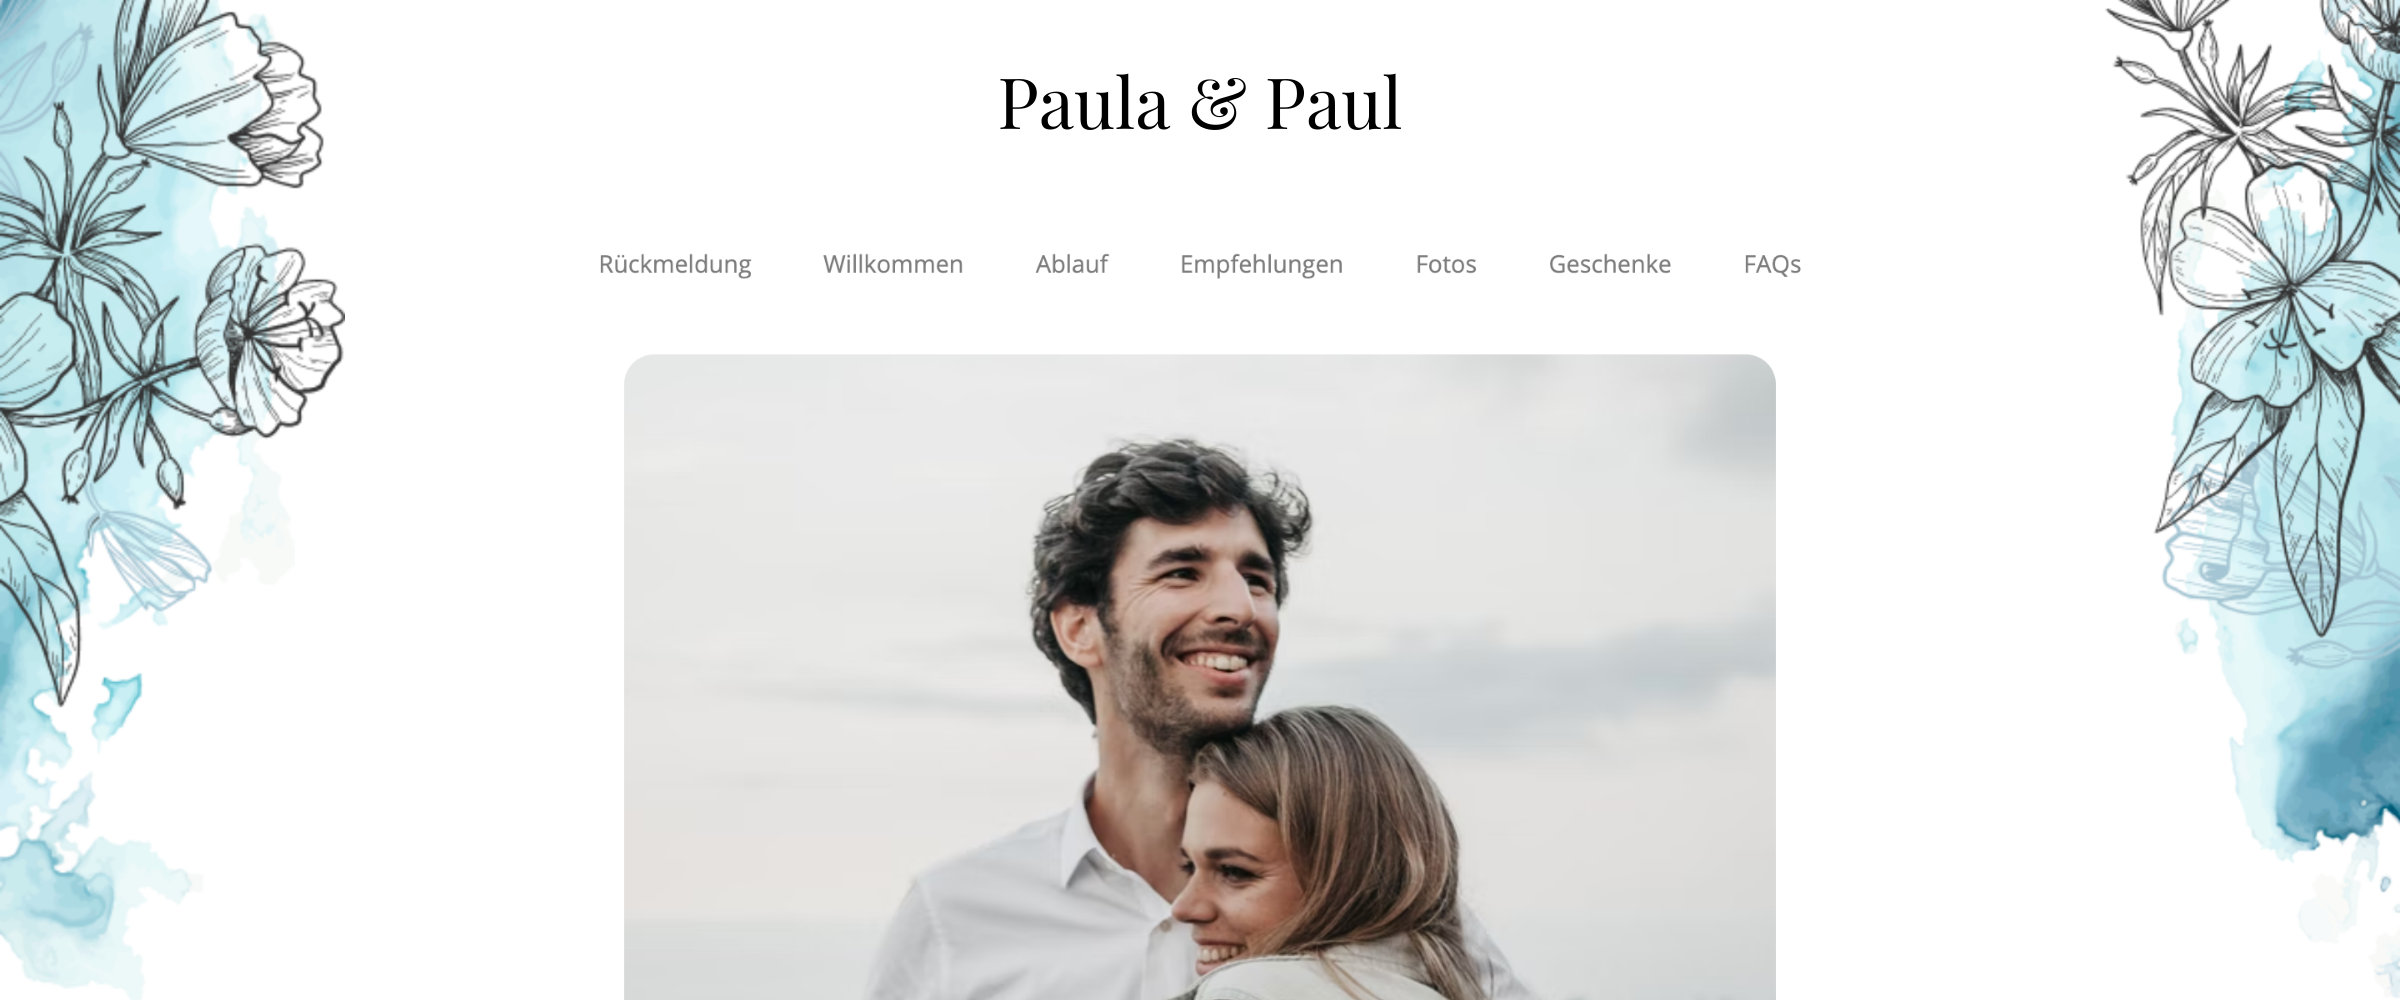 Kostenlose Hochzeits Webseite mit Eurer Liebesgeschichte